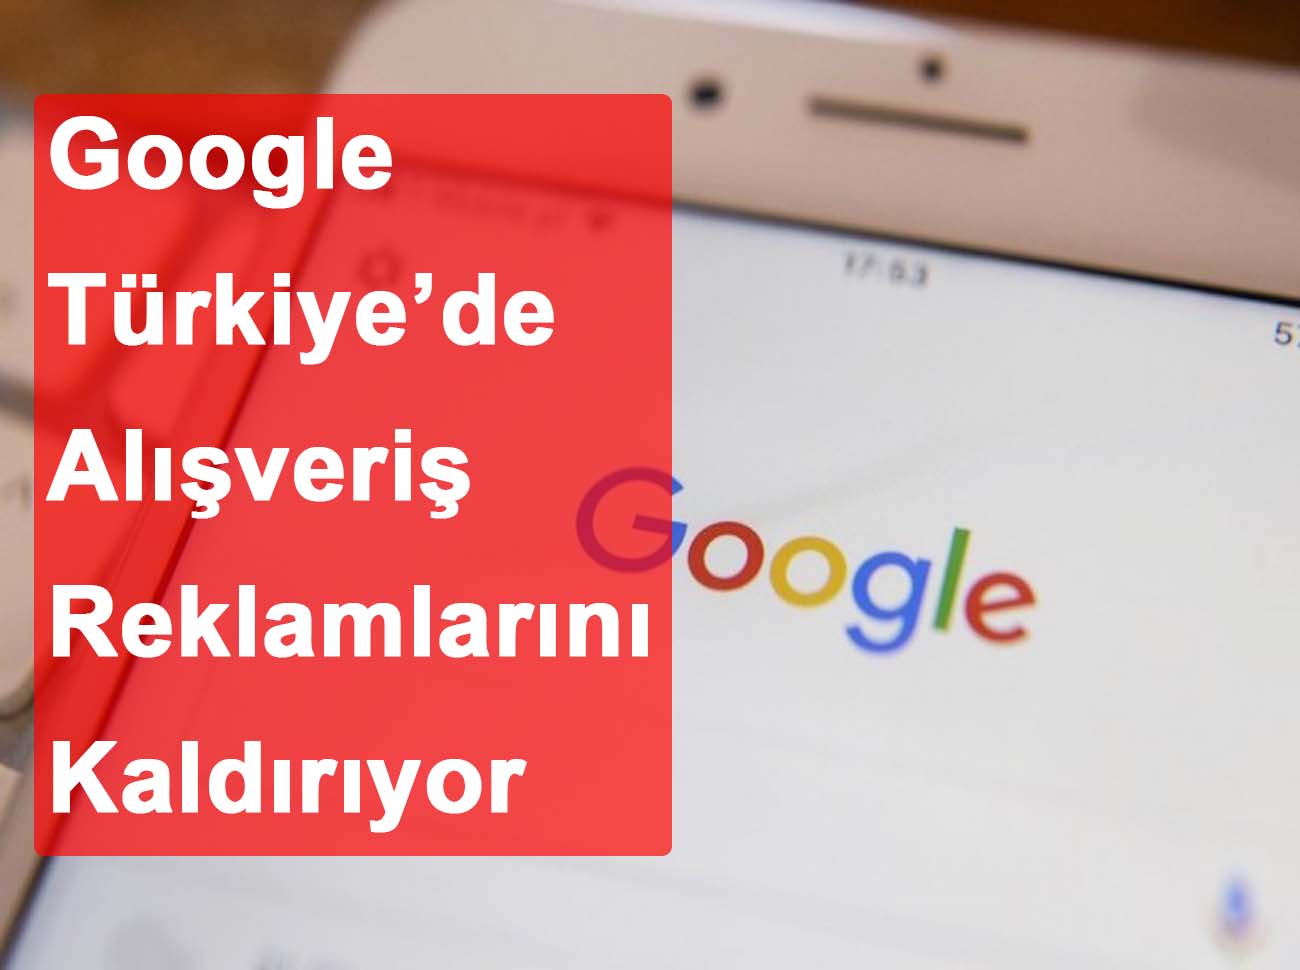 Google Türkiye’de Alışveriş Reklamlarını Kaldırıyor